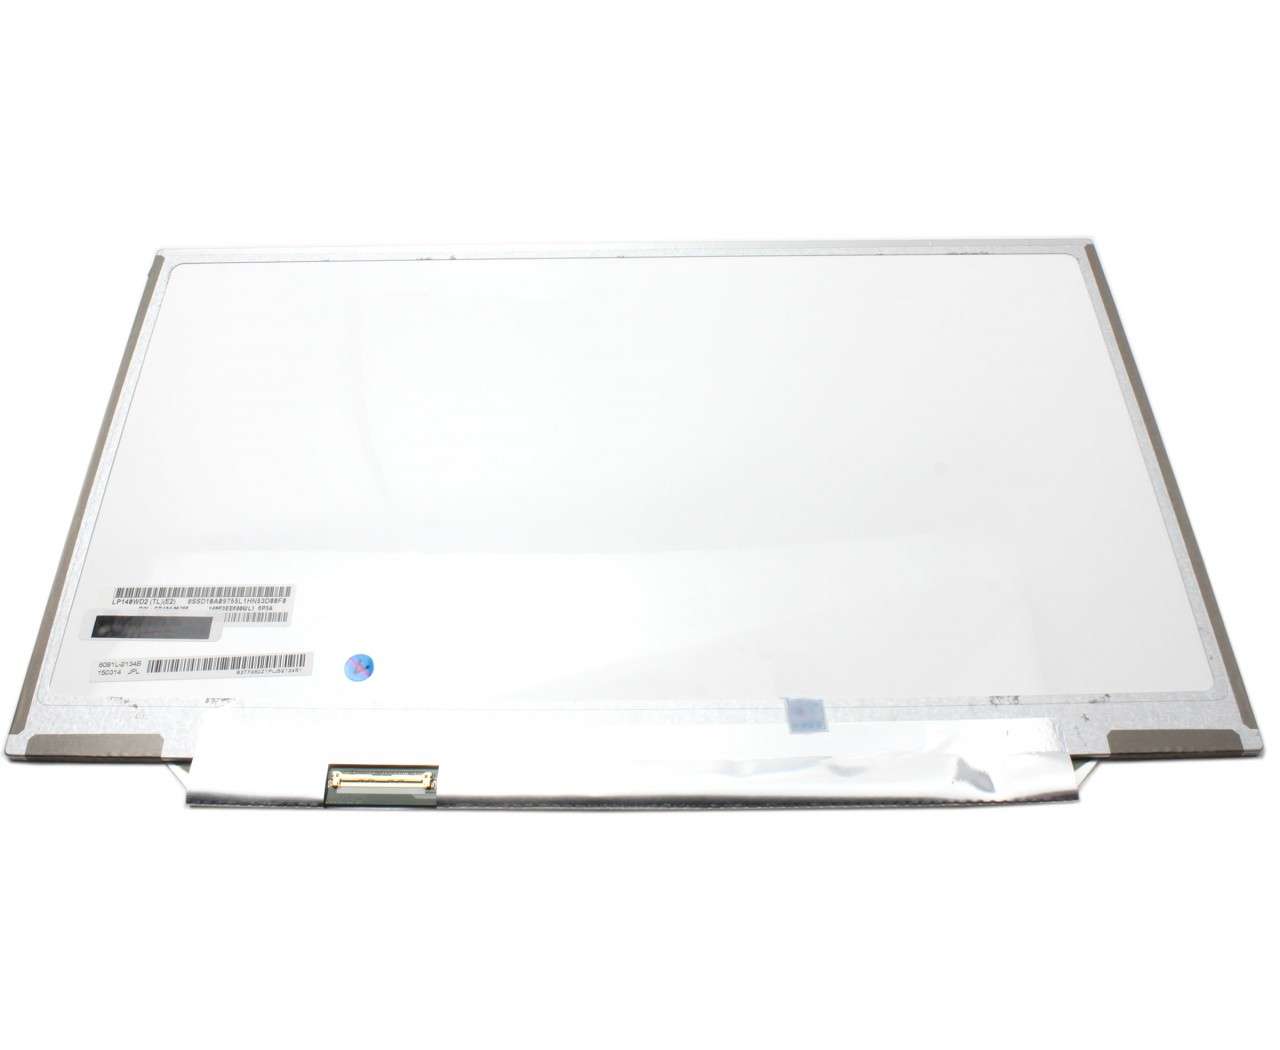 Display laptop LG LP140WD2 (TL)(E2) Ecran 14.0 1600×900 40 pini LVDS (TL)(E2) imagine Black Friday 2021